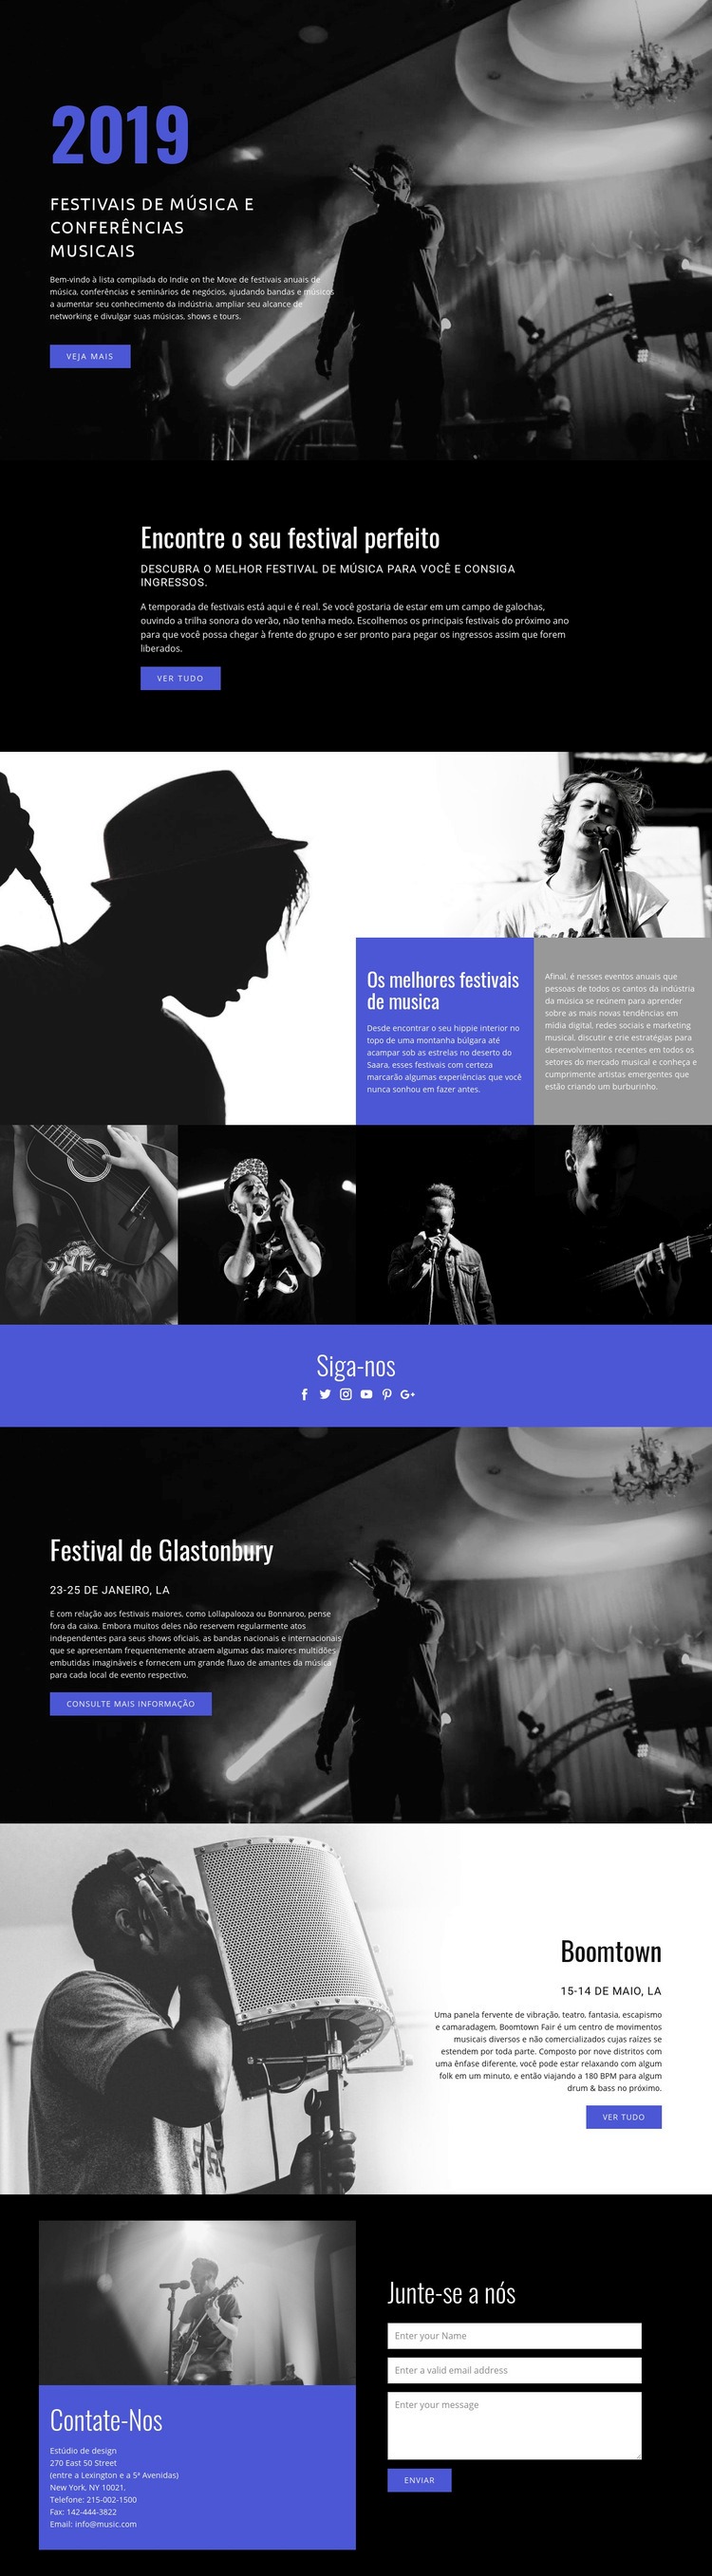 Festivais de música Design do site